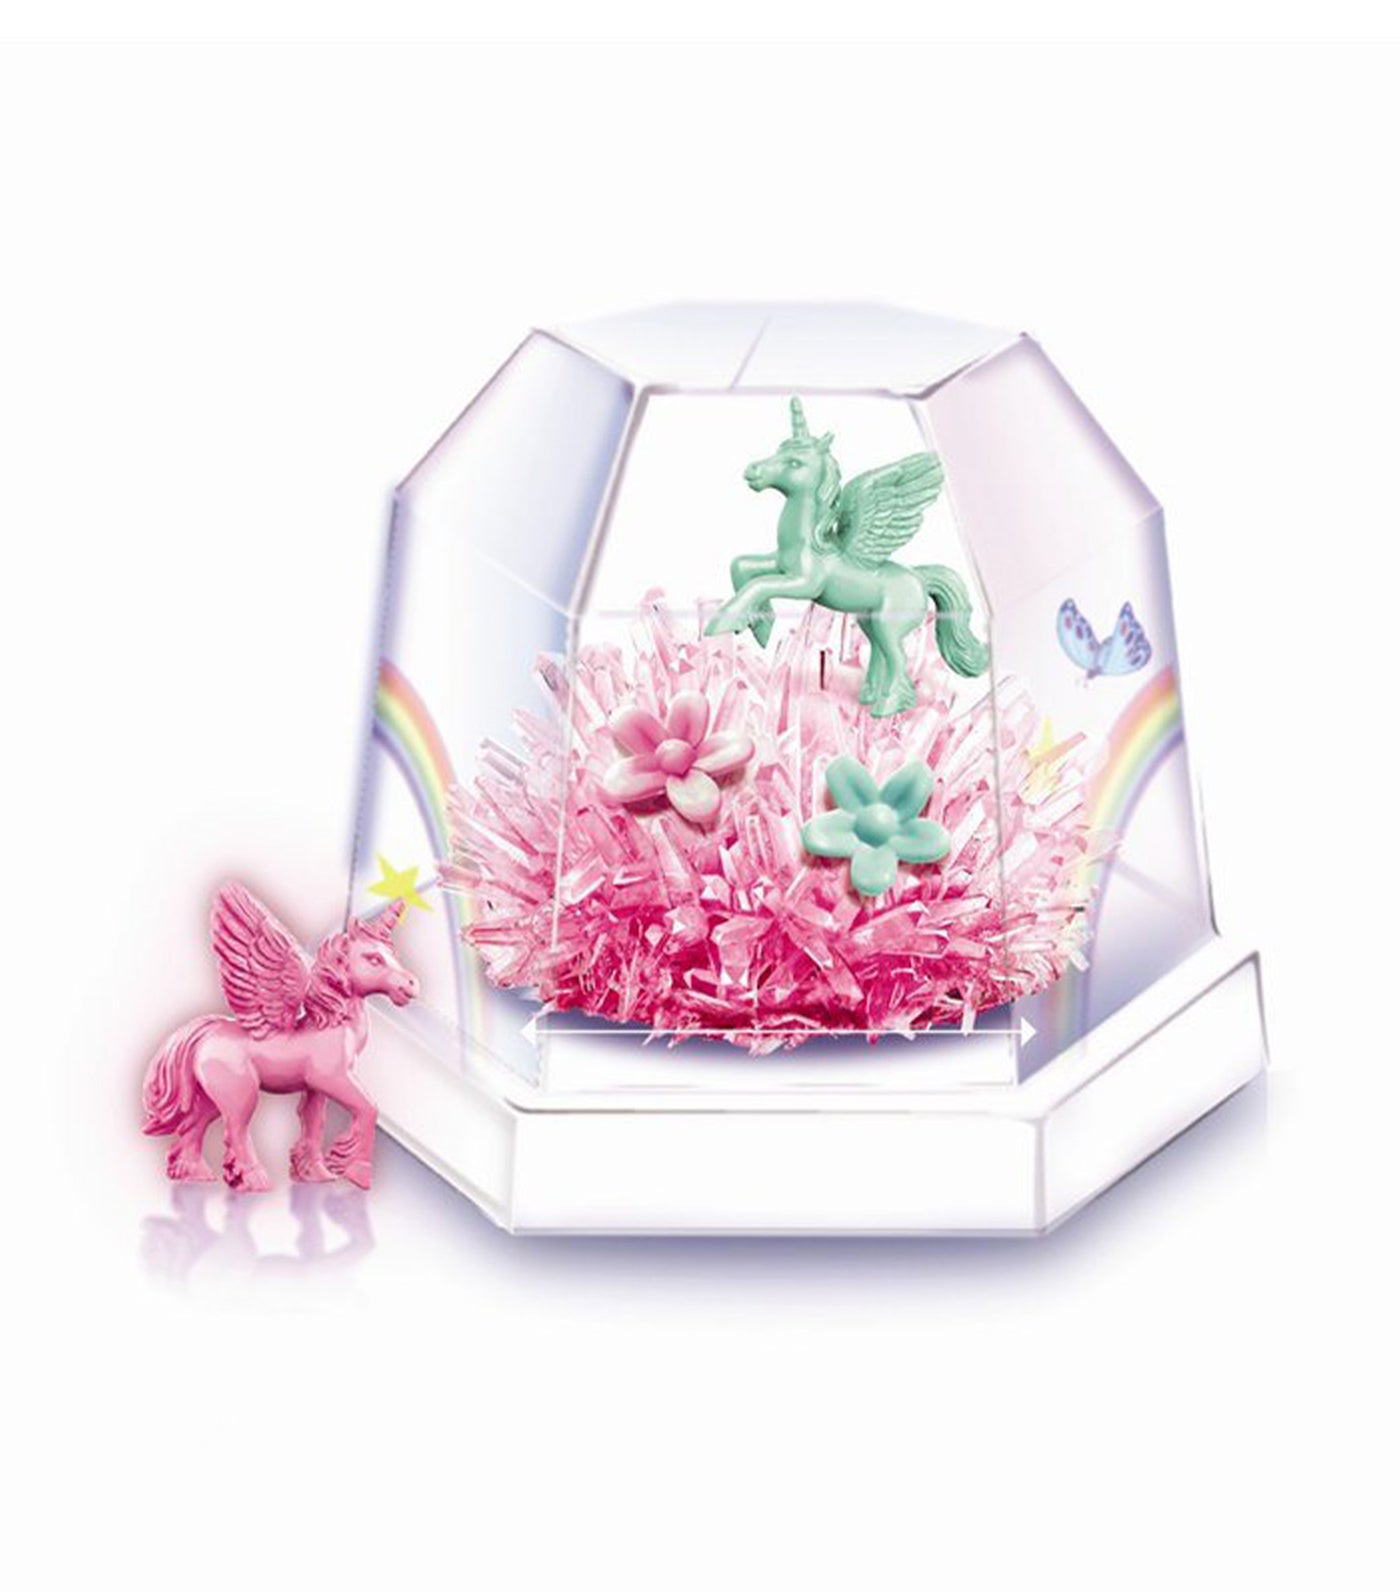 4m unicorn crystal terrarium